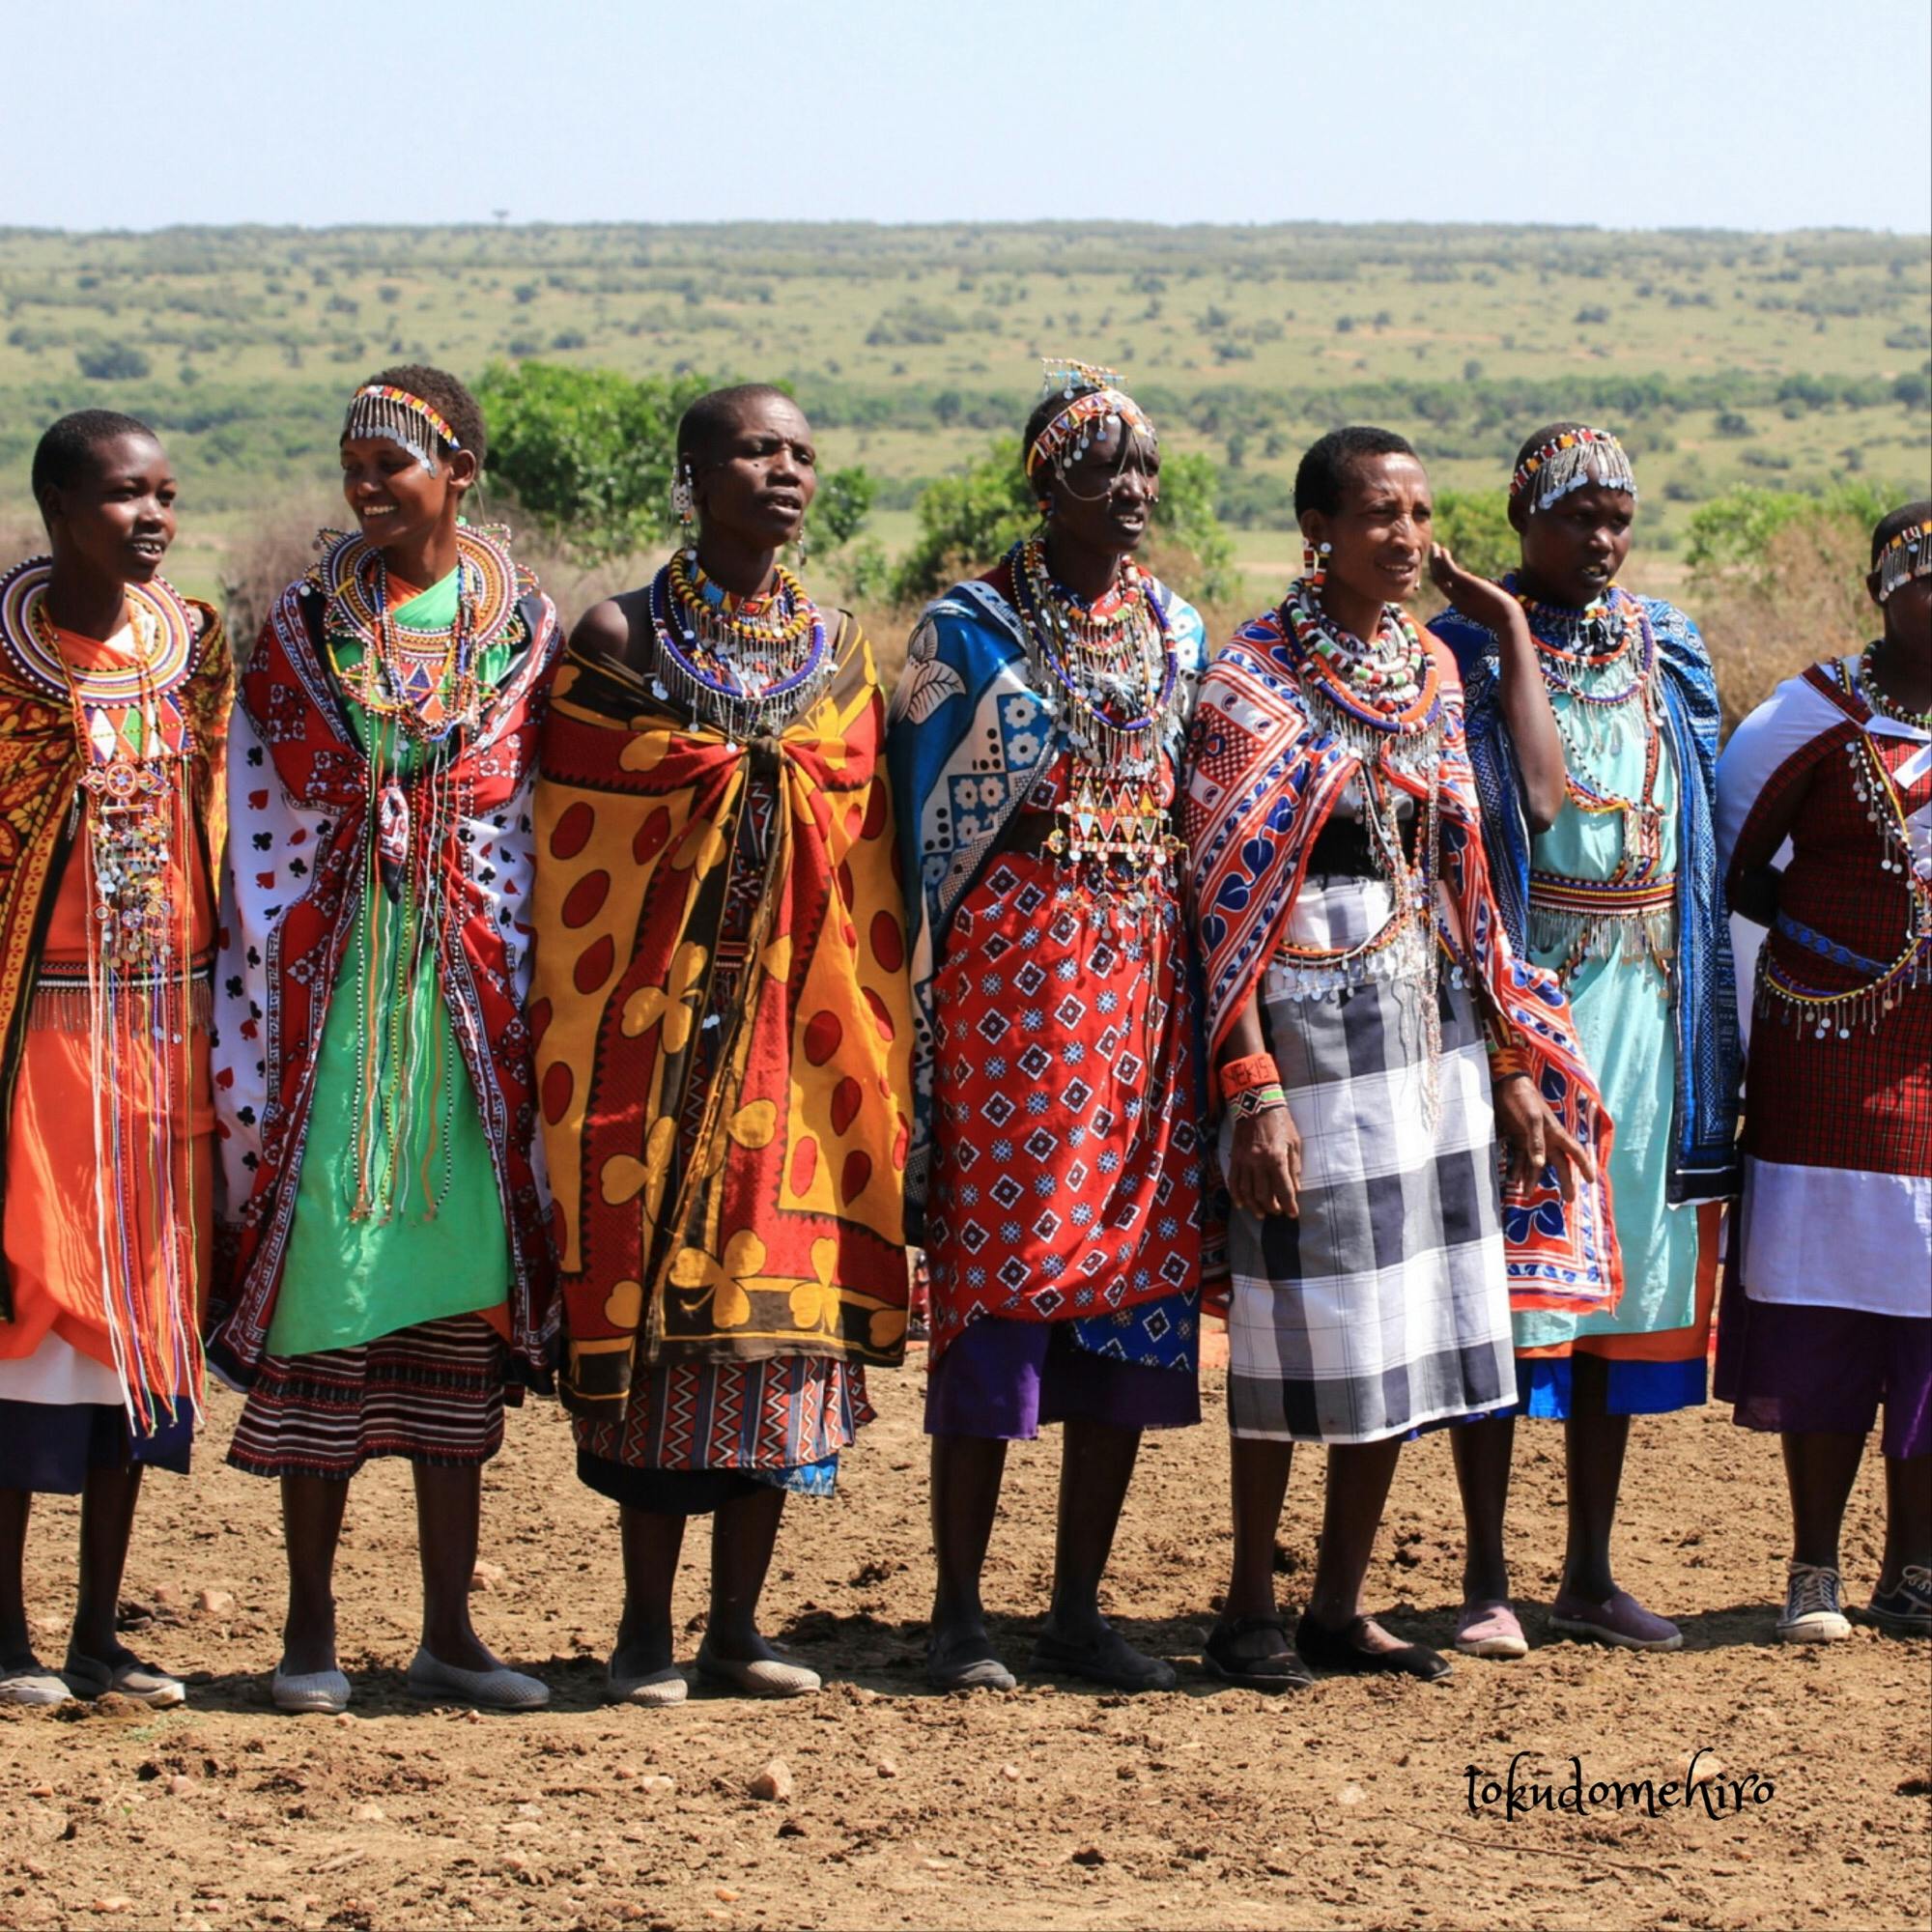 マサイマラ国立保護区の投稿写真 感想 みどころ ケニア マライマラにて マサイ族の奥様方 カラフルな衣装 トリップノート